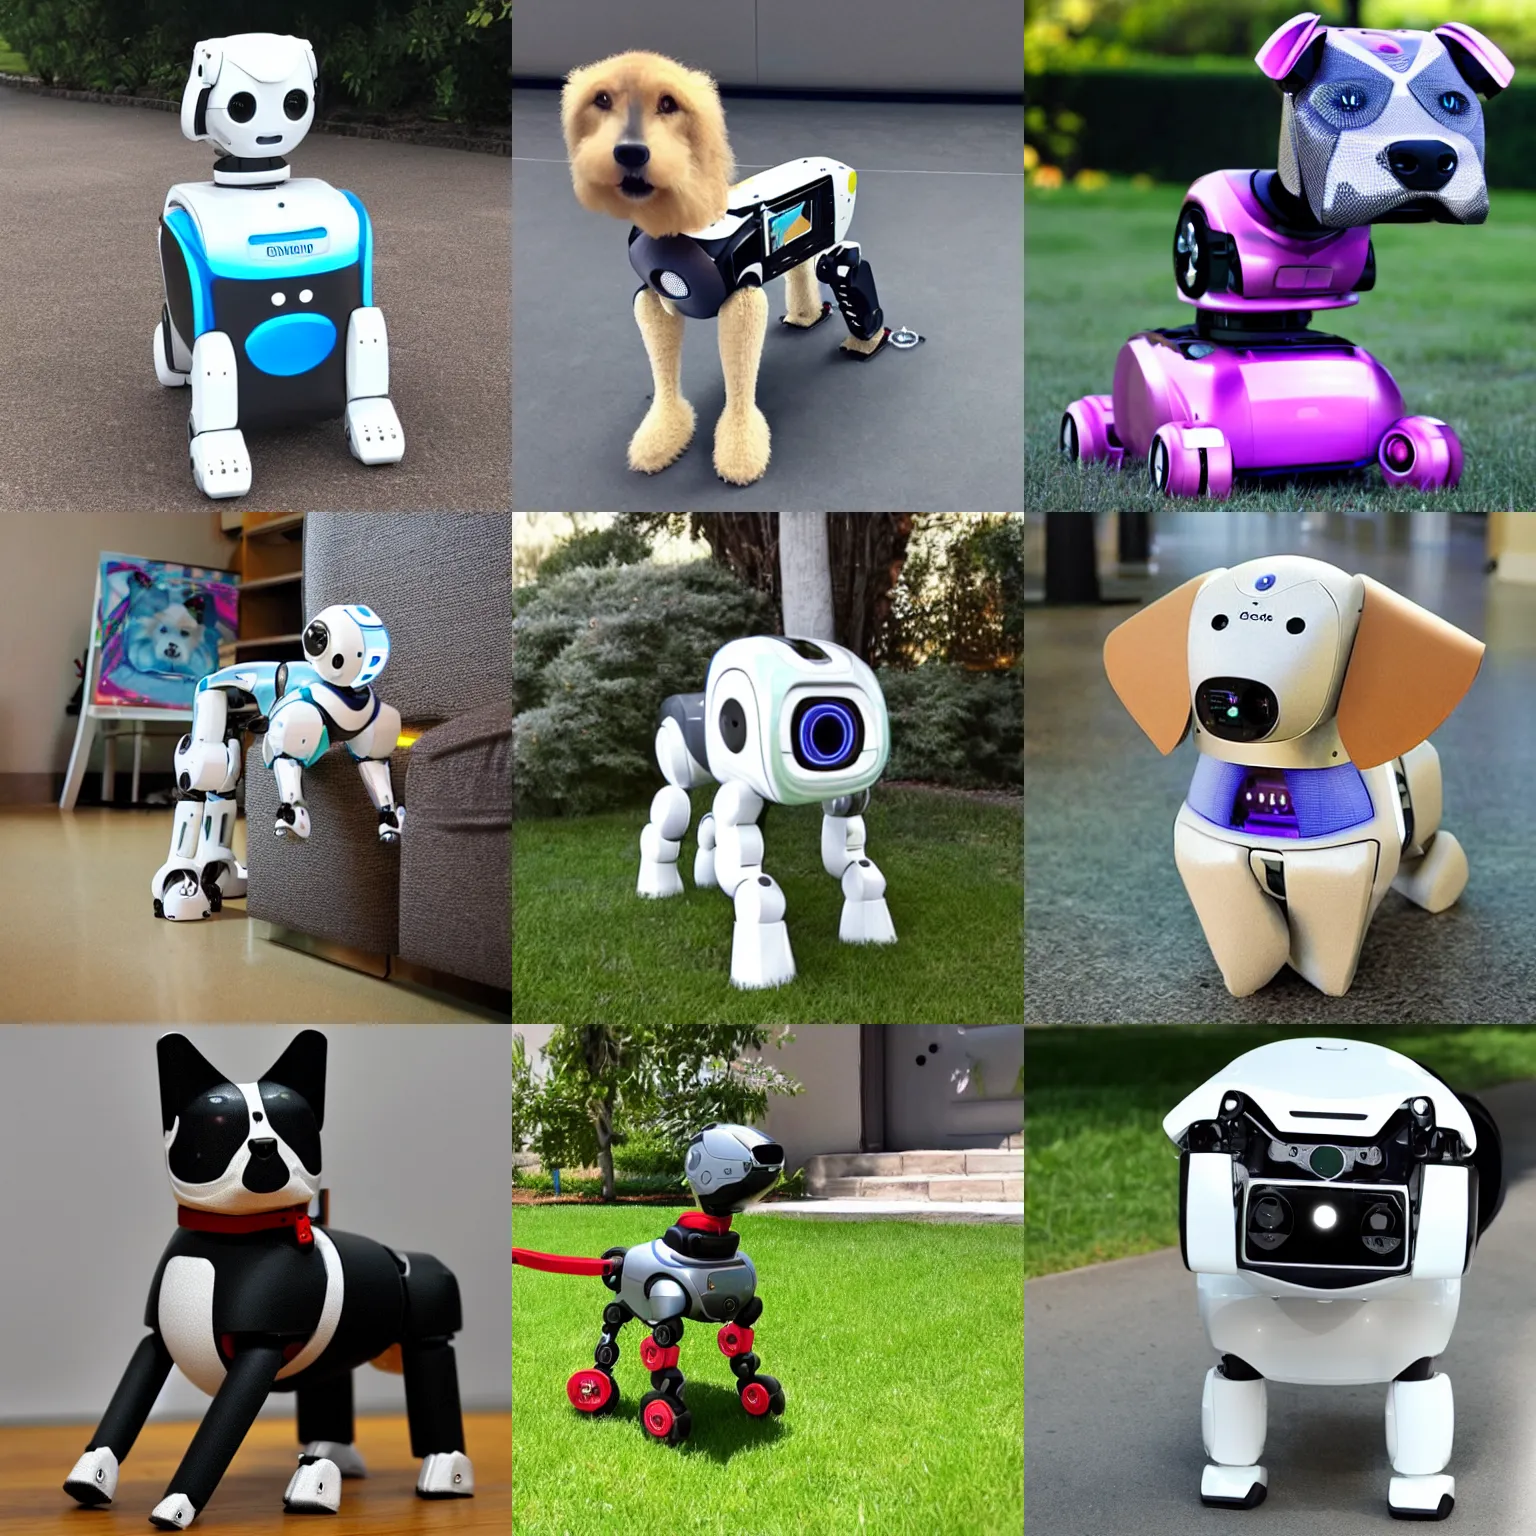 Prompt: a robotic dog